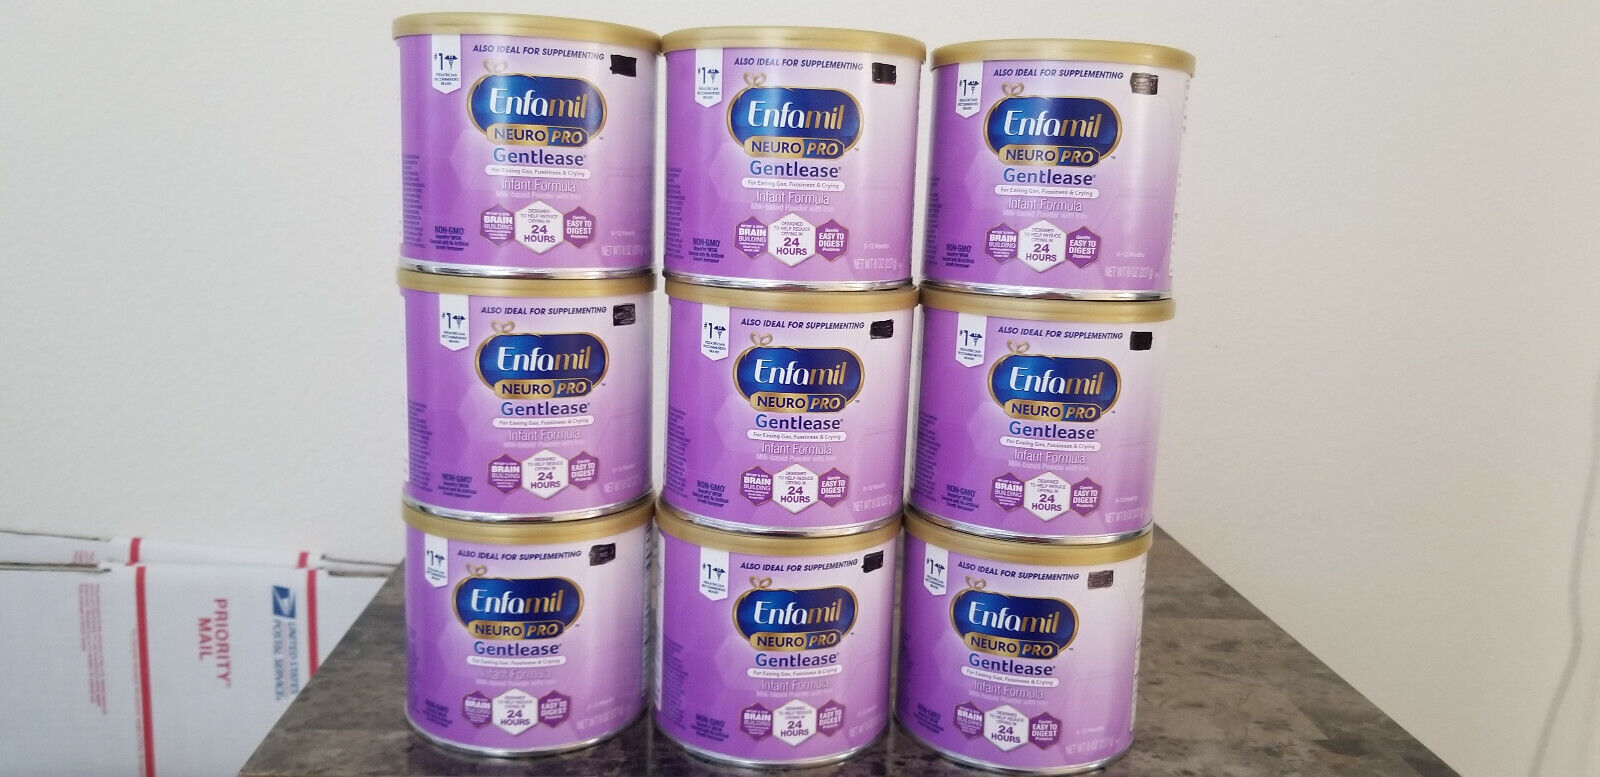 Enfamil Gentlease Milk-Based Infant Formula Powder 8 oz X 9 Ex 06/22 F Shipping Enfamil 869353